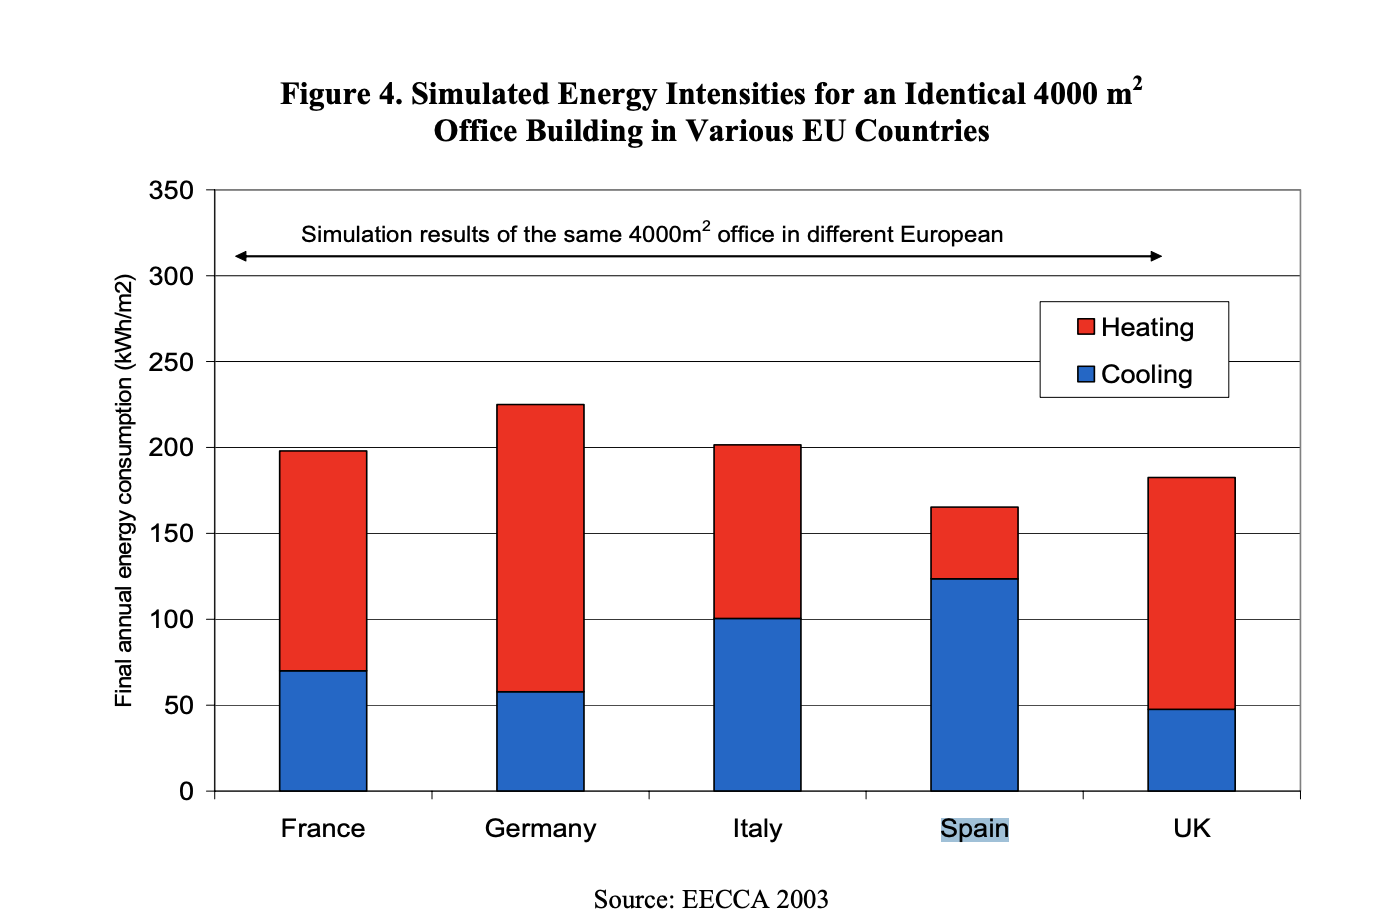 Intensidades energéticas simuladas para un edificio idéntico de 4000 m2 en varios países de la UE